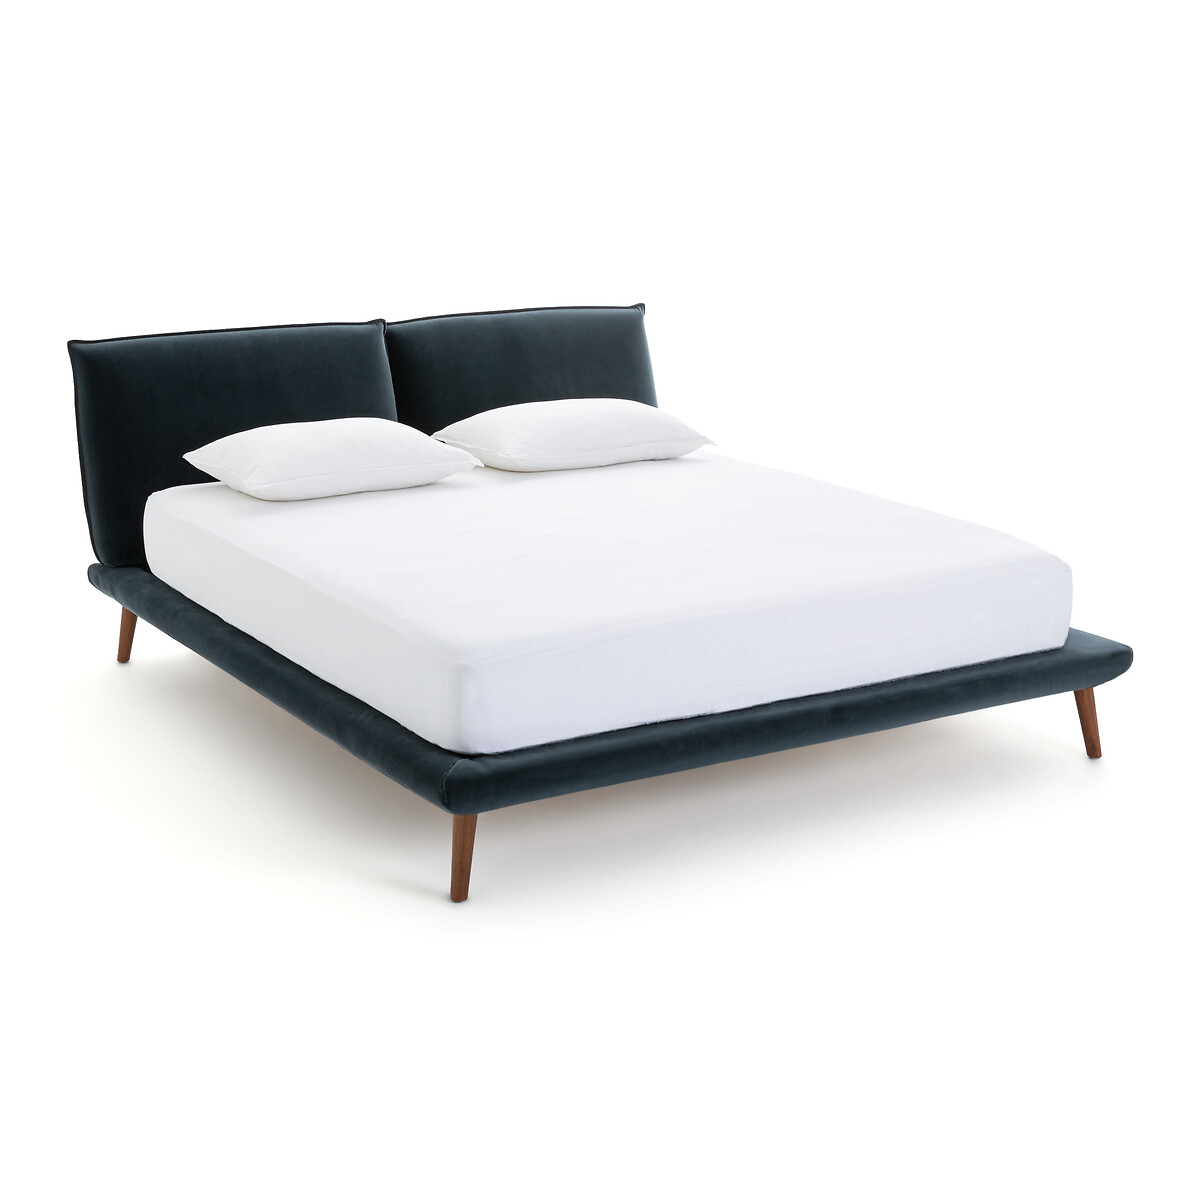 Кровать Aurore из велюра дизайн Э Галлины 160 x 200 см синий